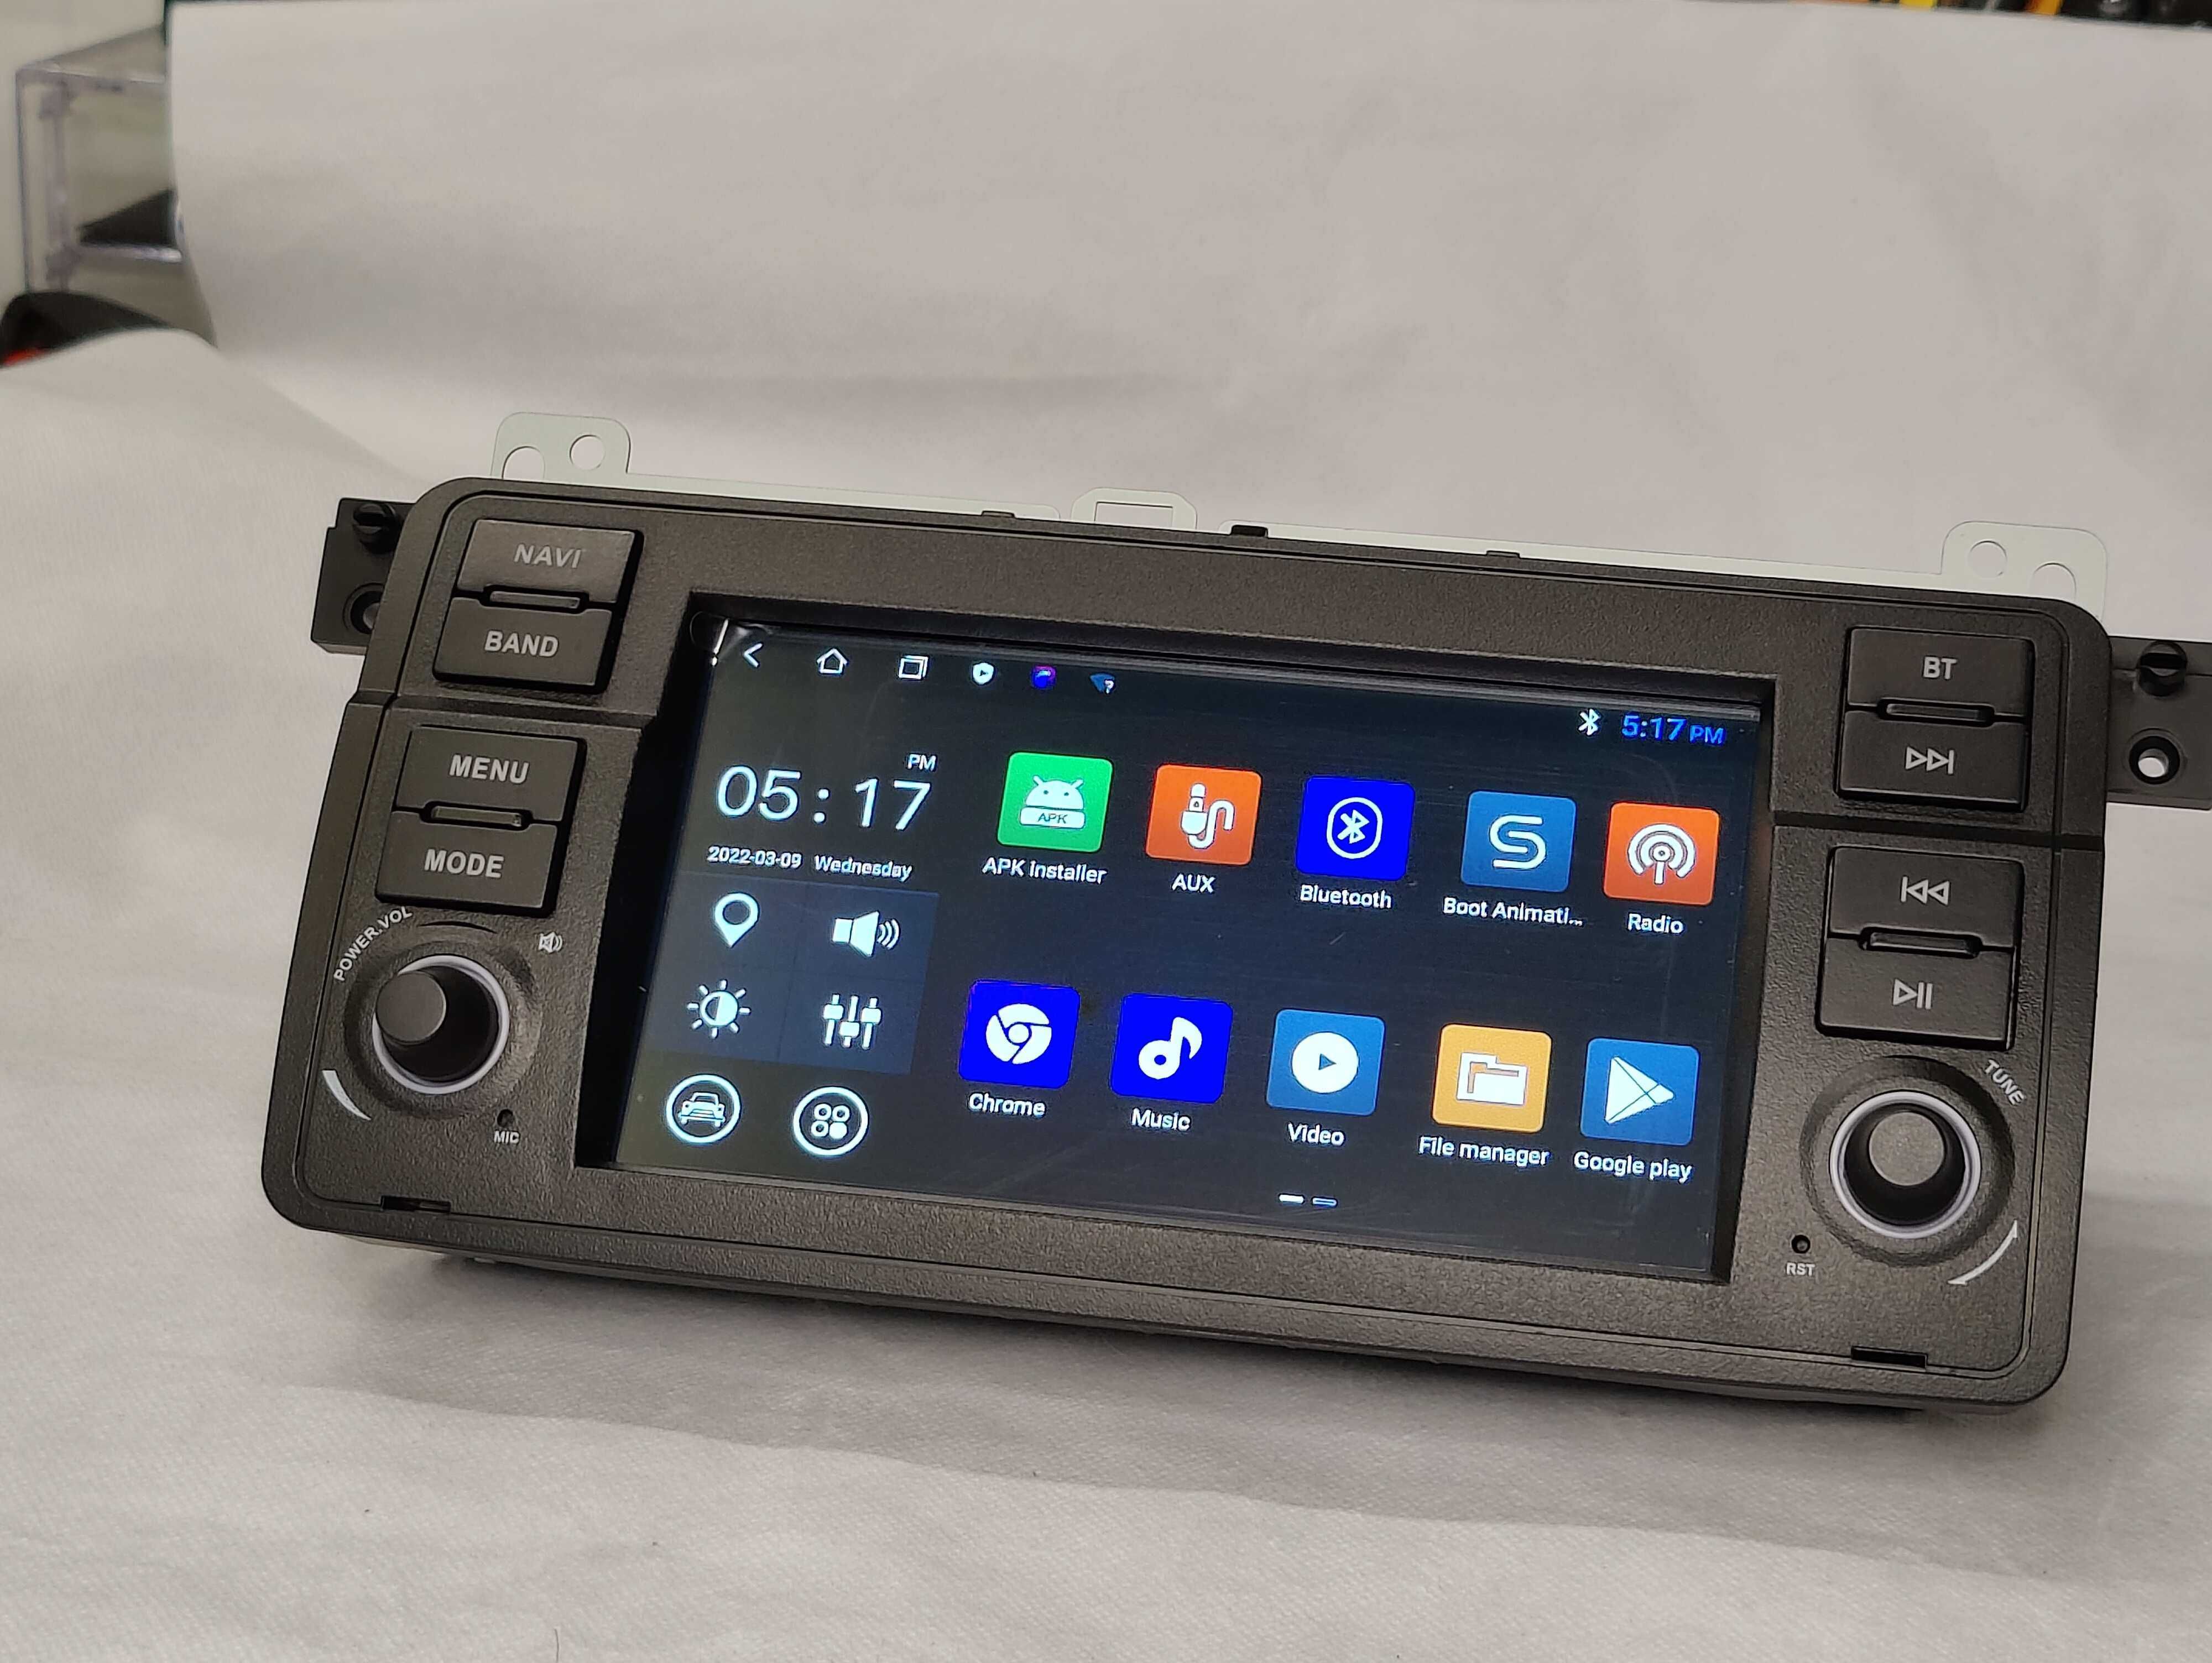 Rádio BMW E46 Android 12 WiFi GPS Novo com Garantia 2GB RAM